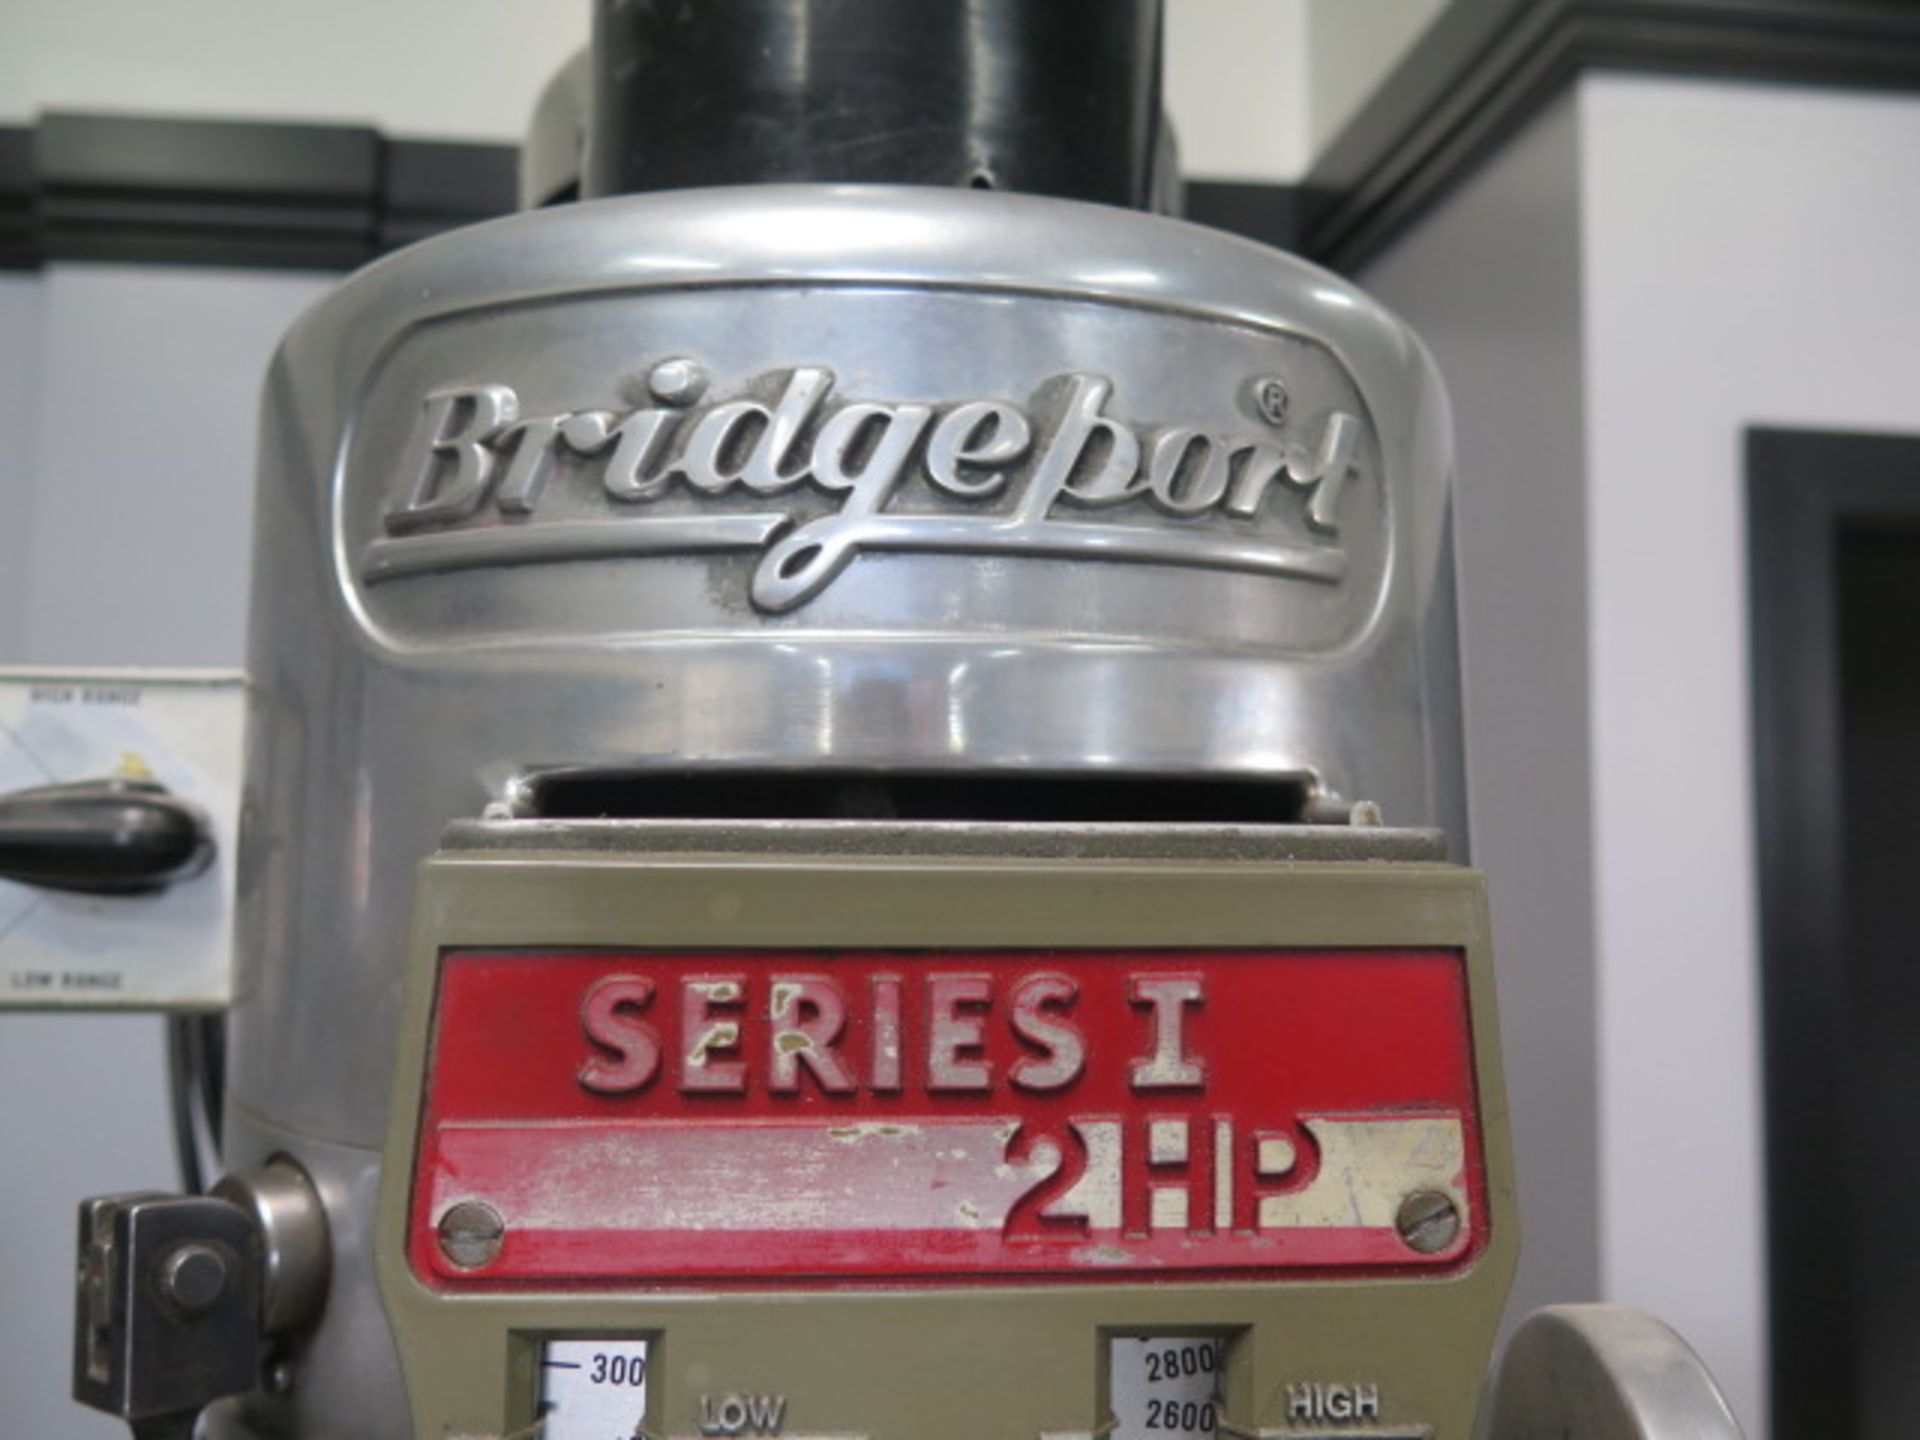 Bridgeport Series 1 – 2Hp Vertical Mill s/n 206166 w/ Acu-Rite Millmate DRO, 60-4200 Dial Change - Image 4 of 15